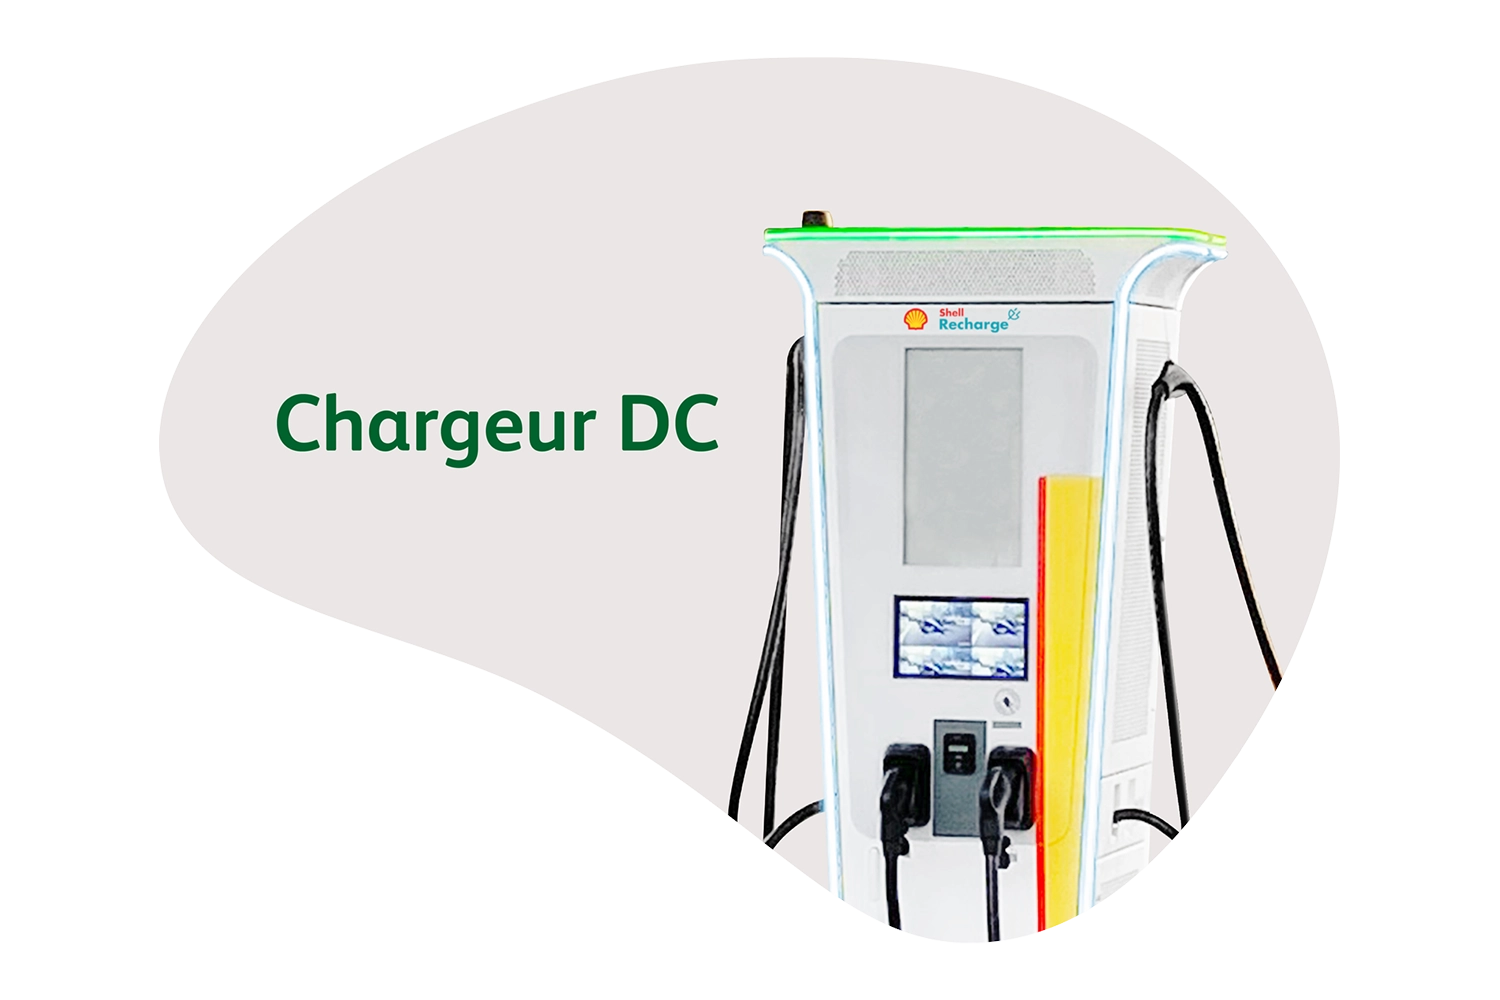 Représentation d'un chargeur Shell Recharge DC rapide qu'ubitricity utilise pour développer son infrastructure de recharge.